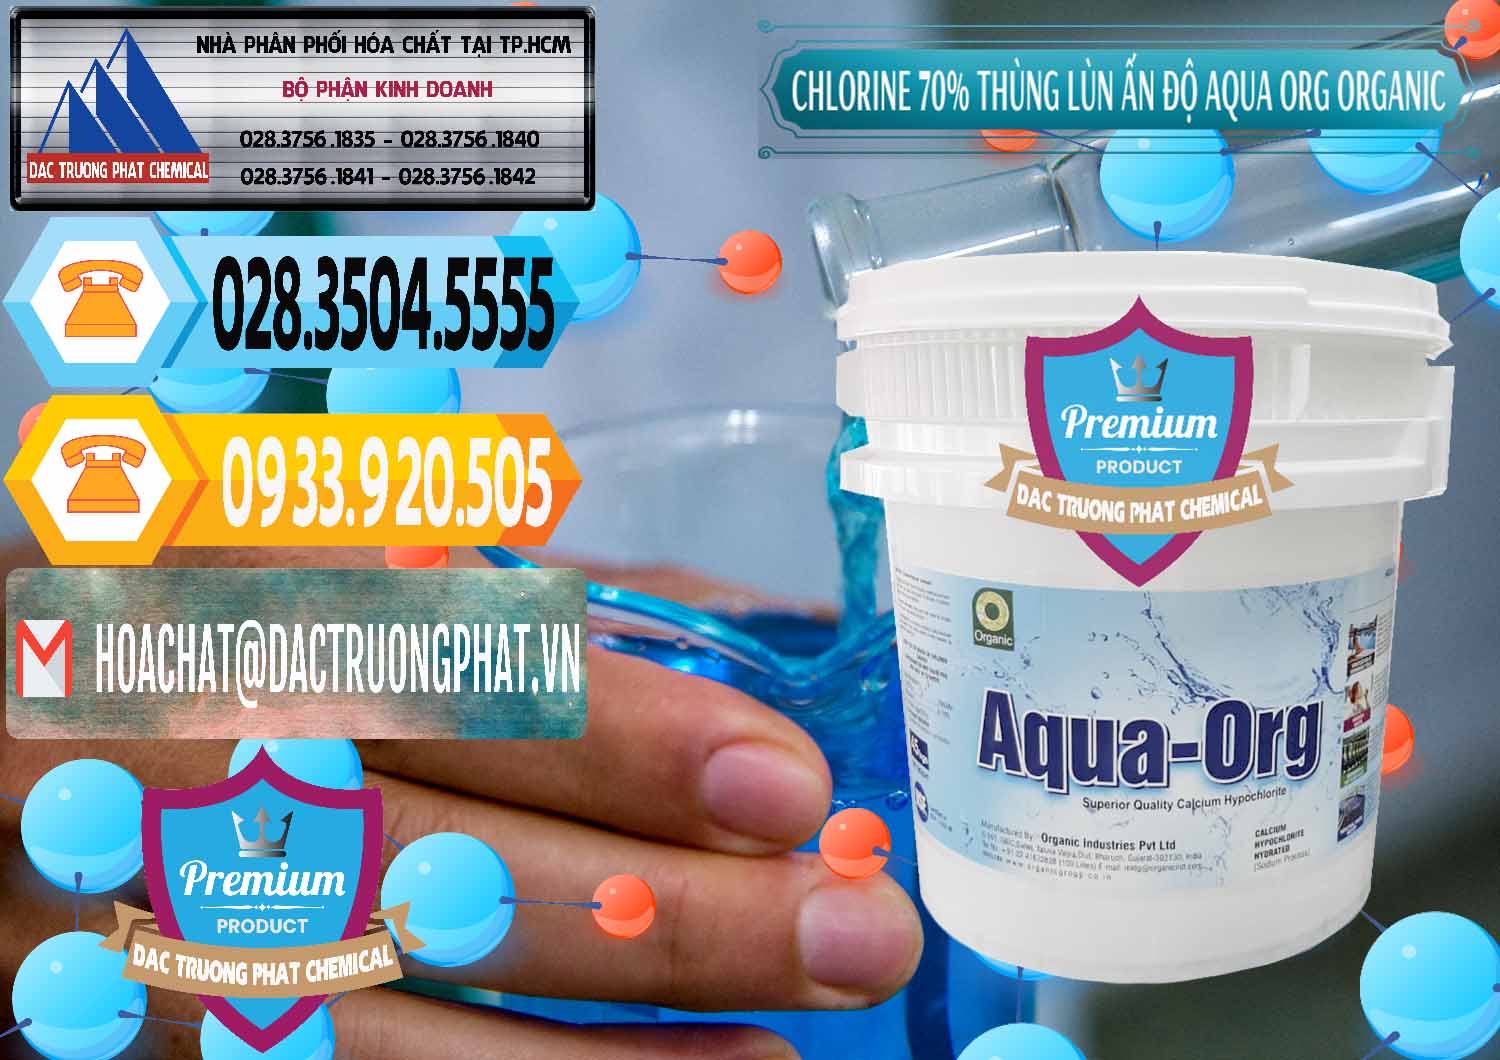 Bán và cung cấp Chlorine – Clorin 70% Thùng Lùn Ấn Độ Aqua ORG Organic India - 0212 - Nơi cung cấp & phân phối hóa chất tại TP.HCM - hoachattayrua.net